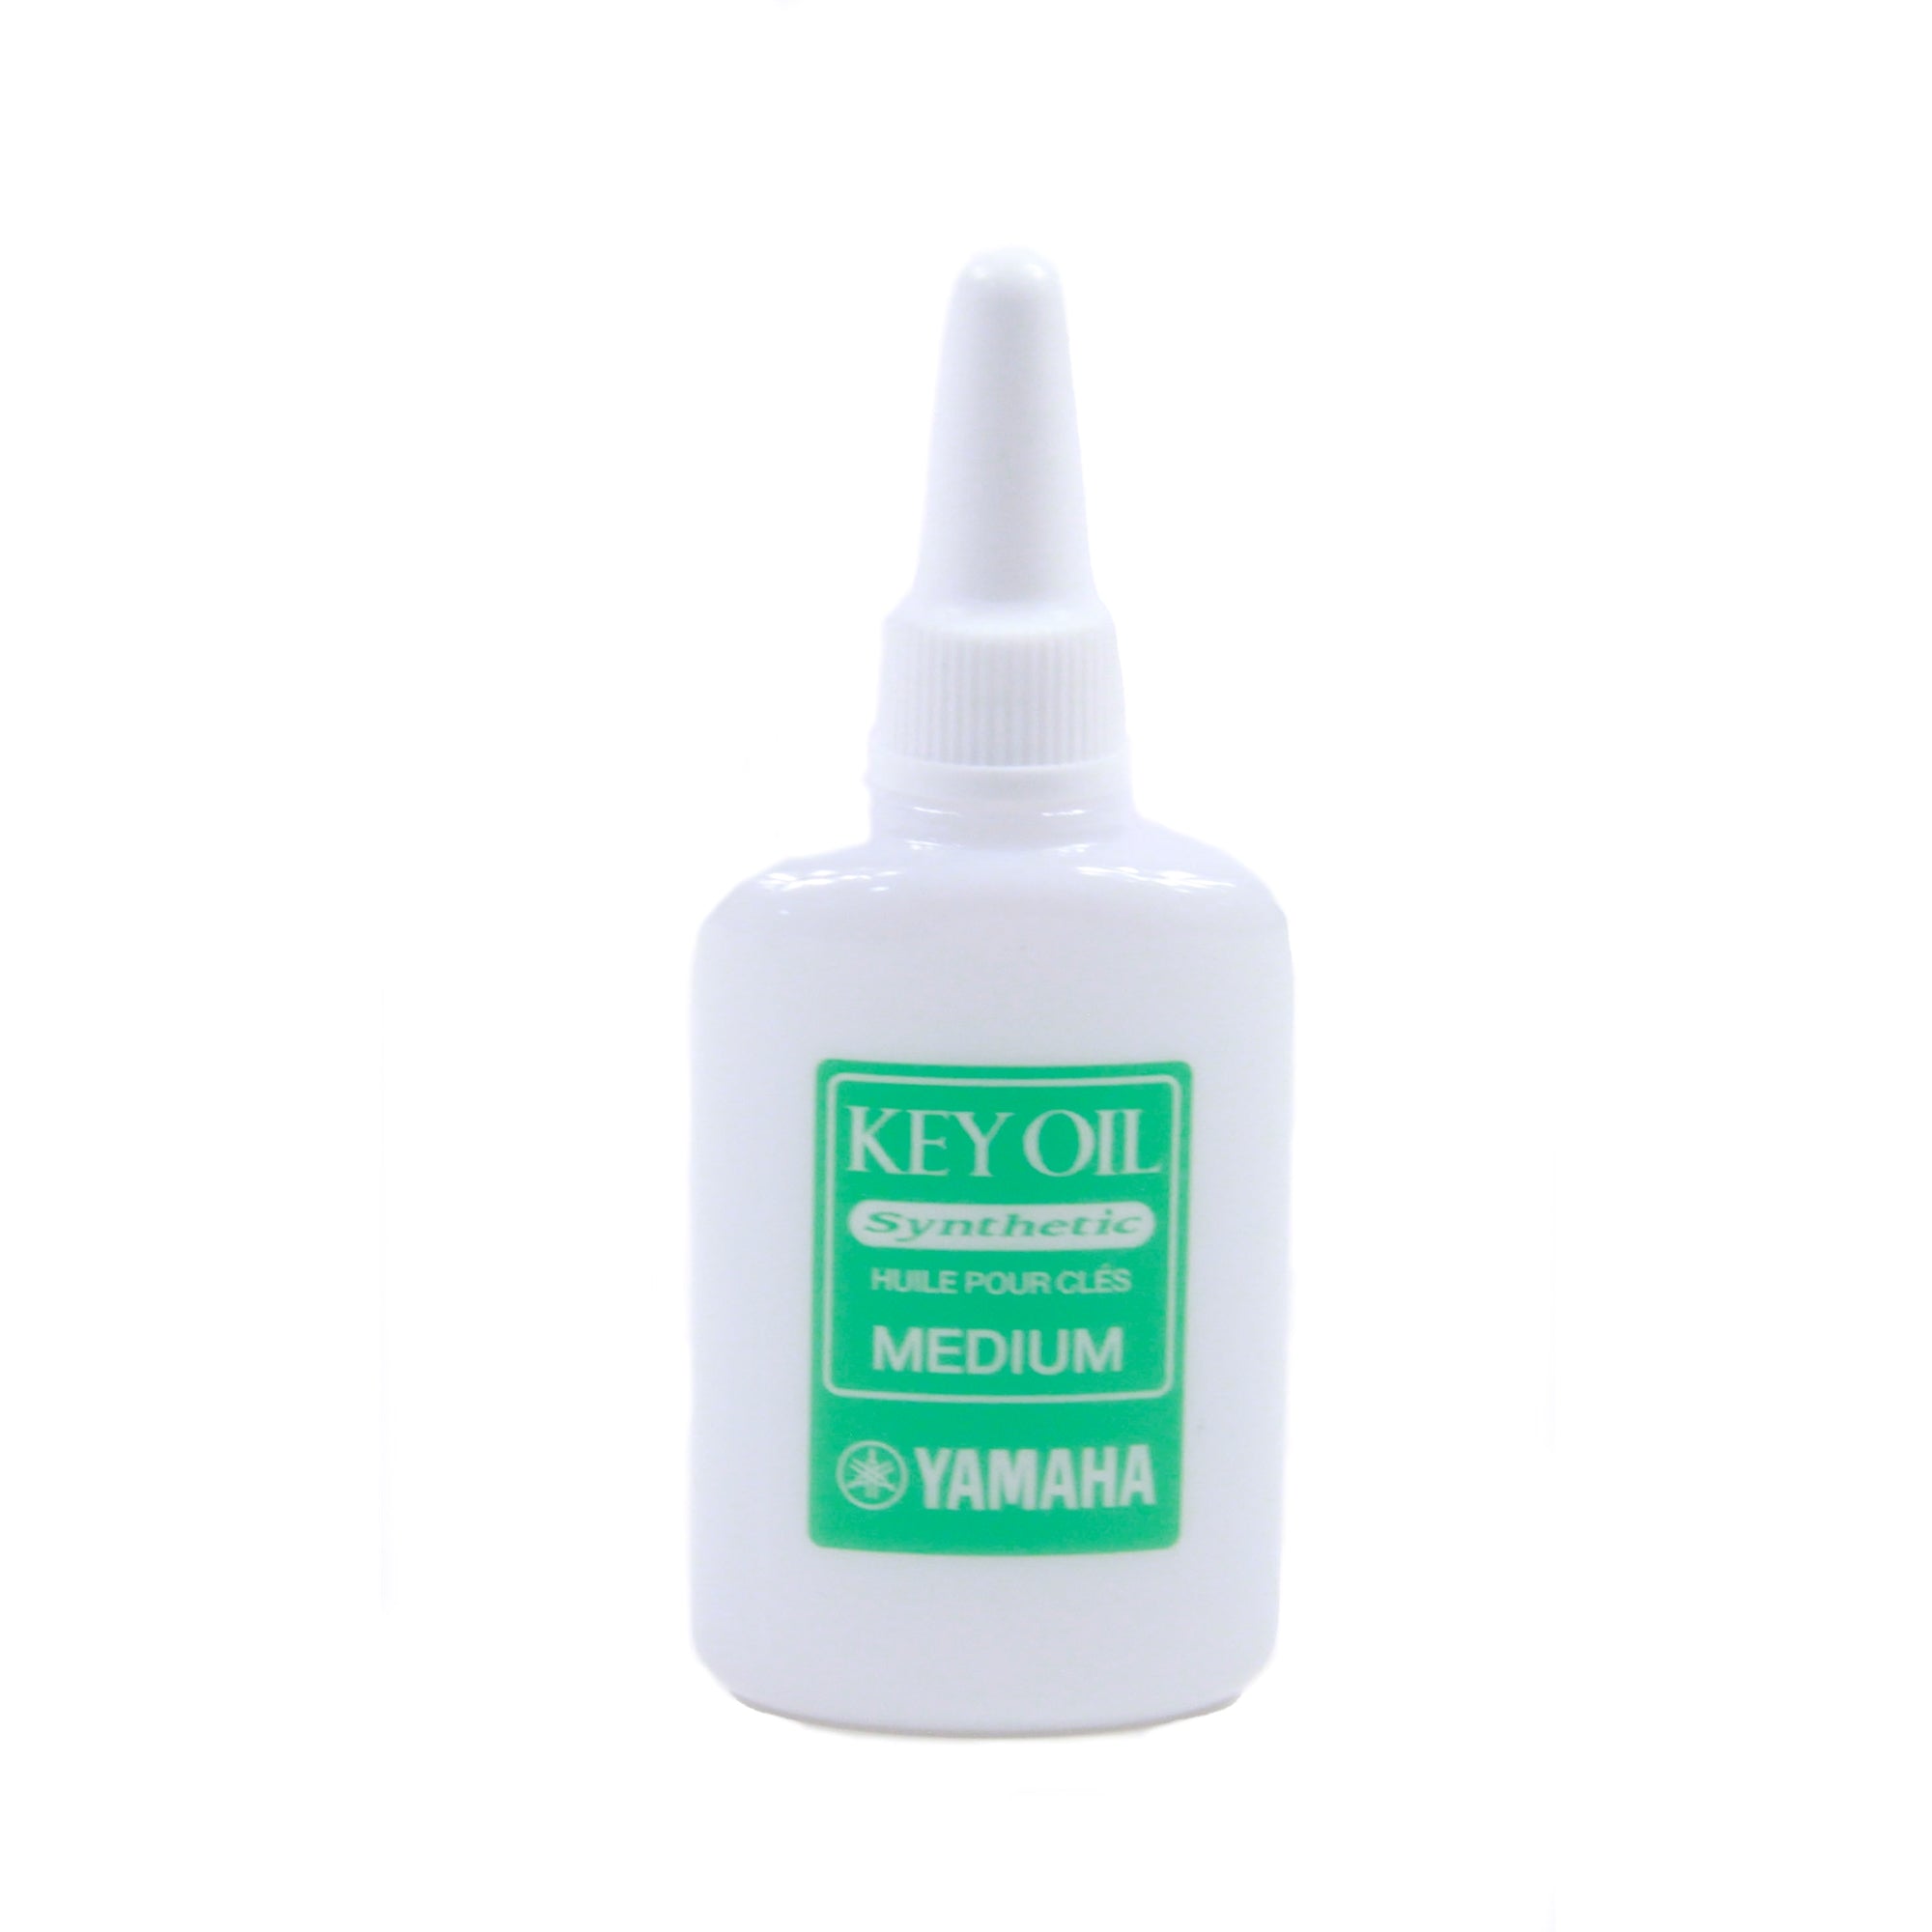 YAMAHA YACMKO Key oil - Medium Synthetic, 20mL